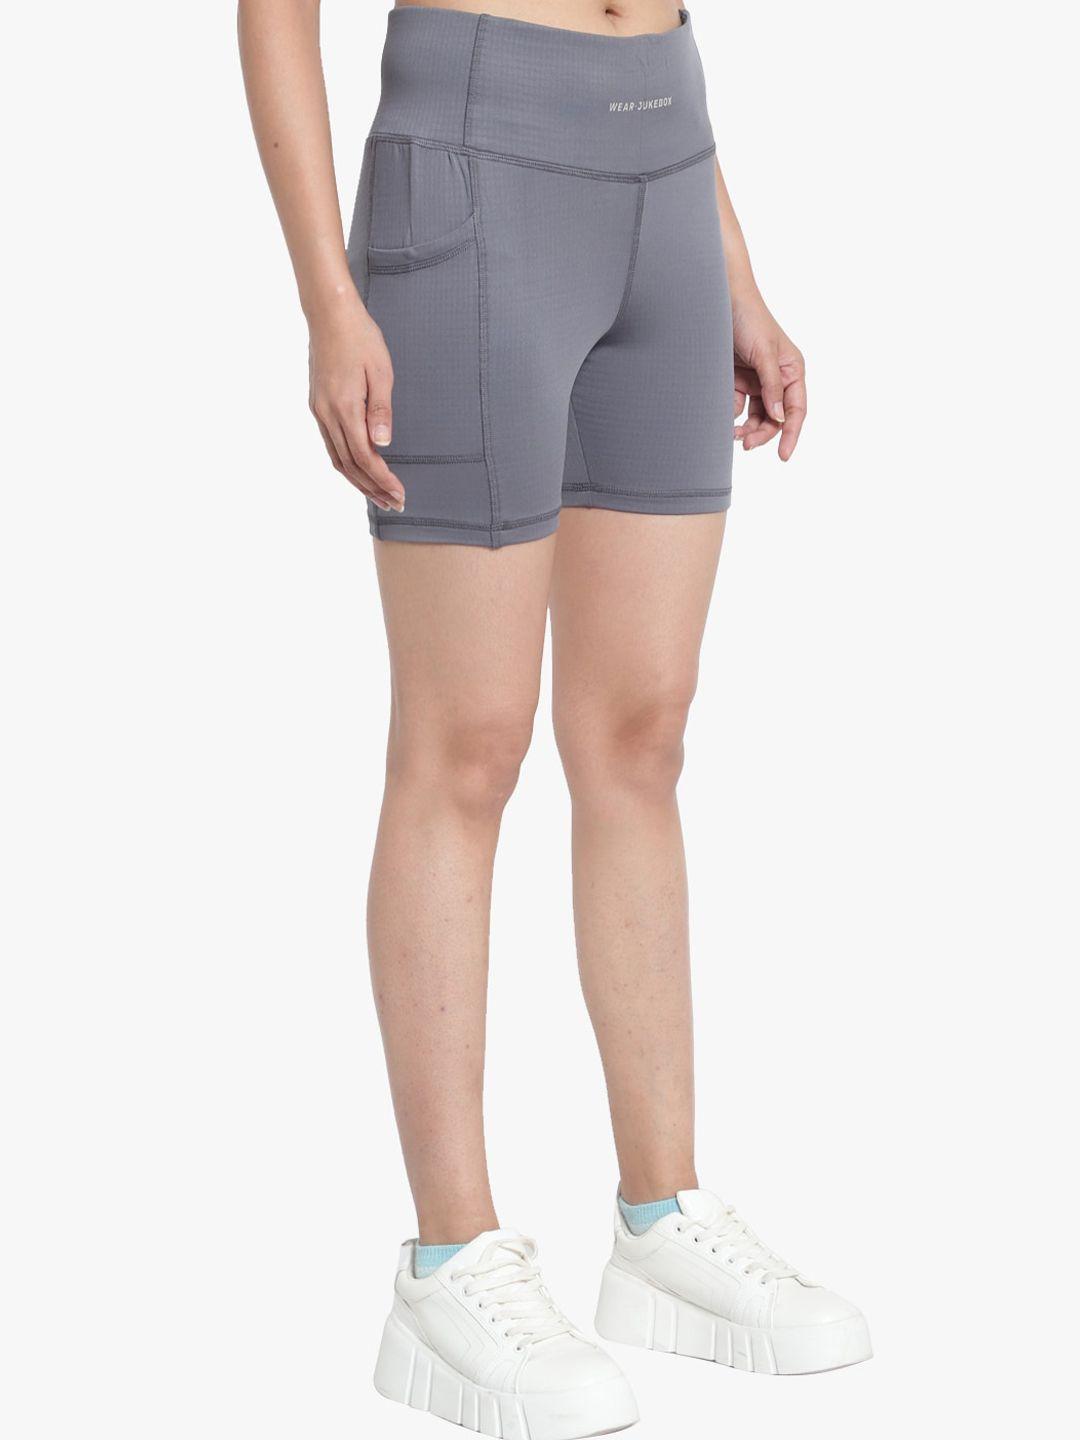 wearjukebox women grey solid shorts & sports bra co-ords